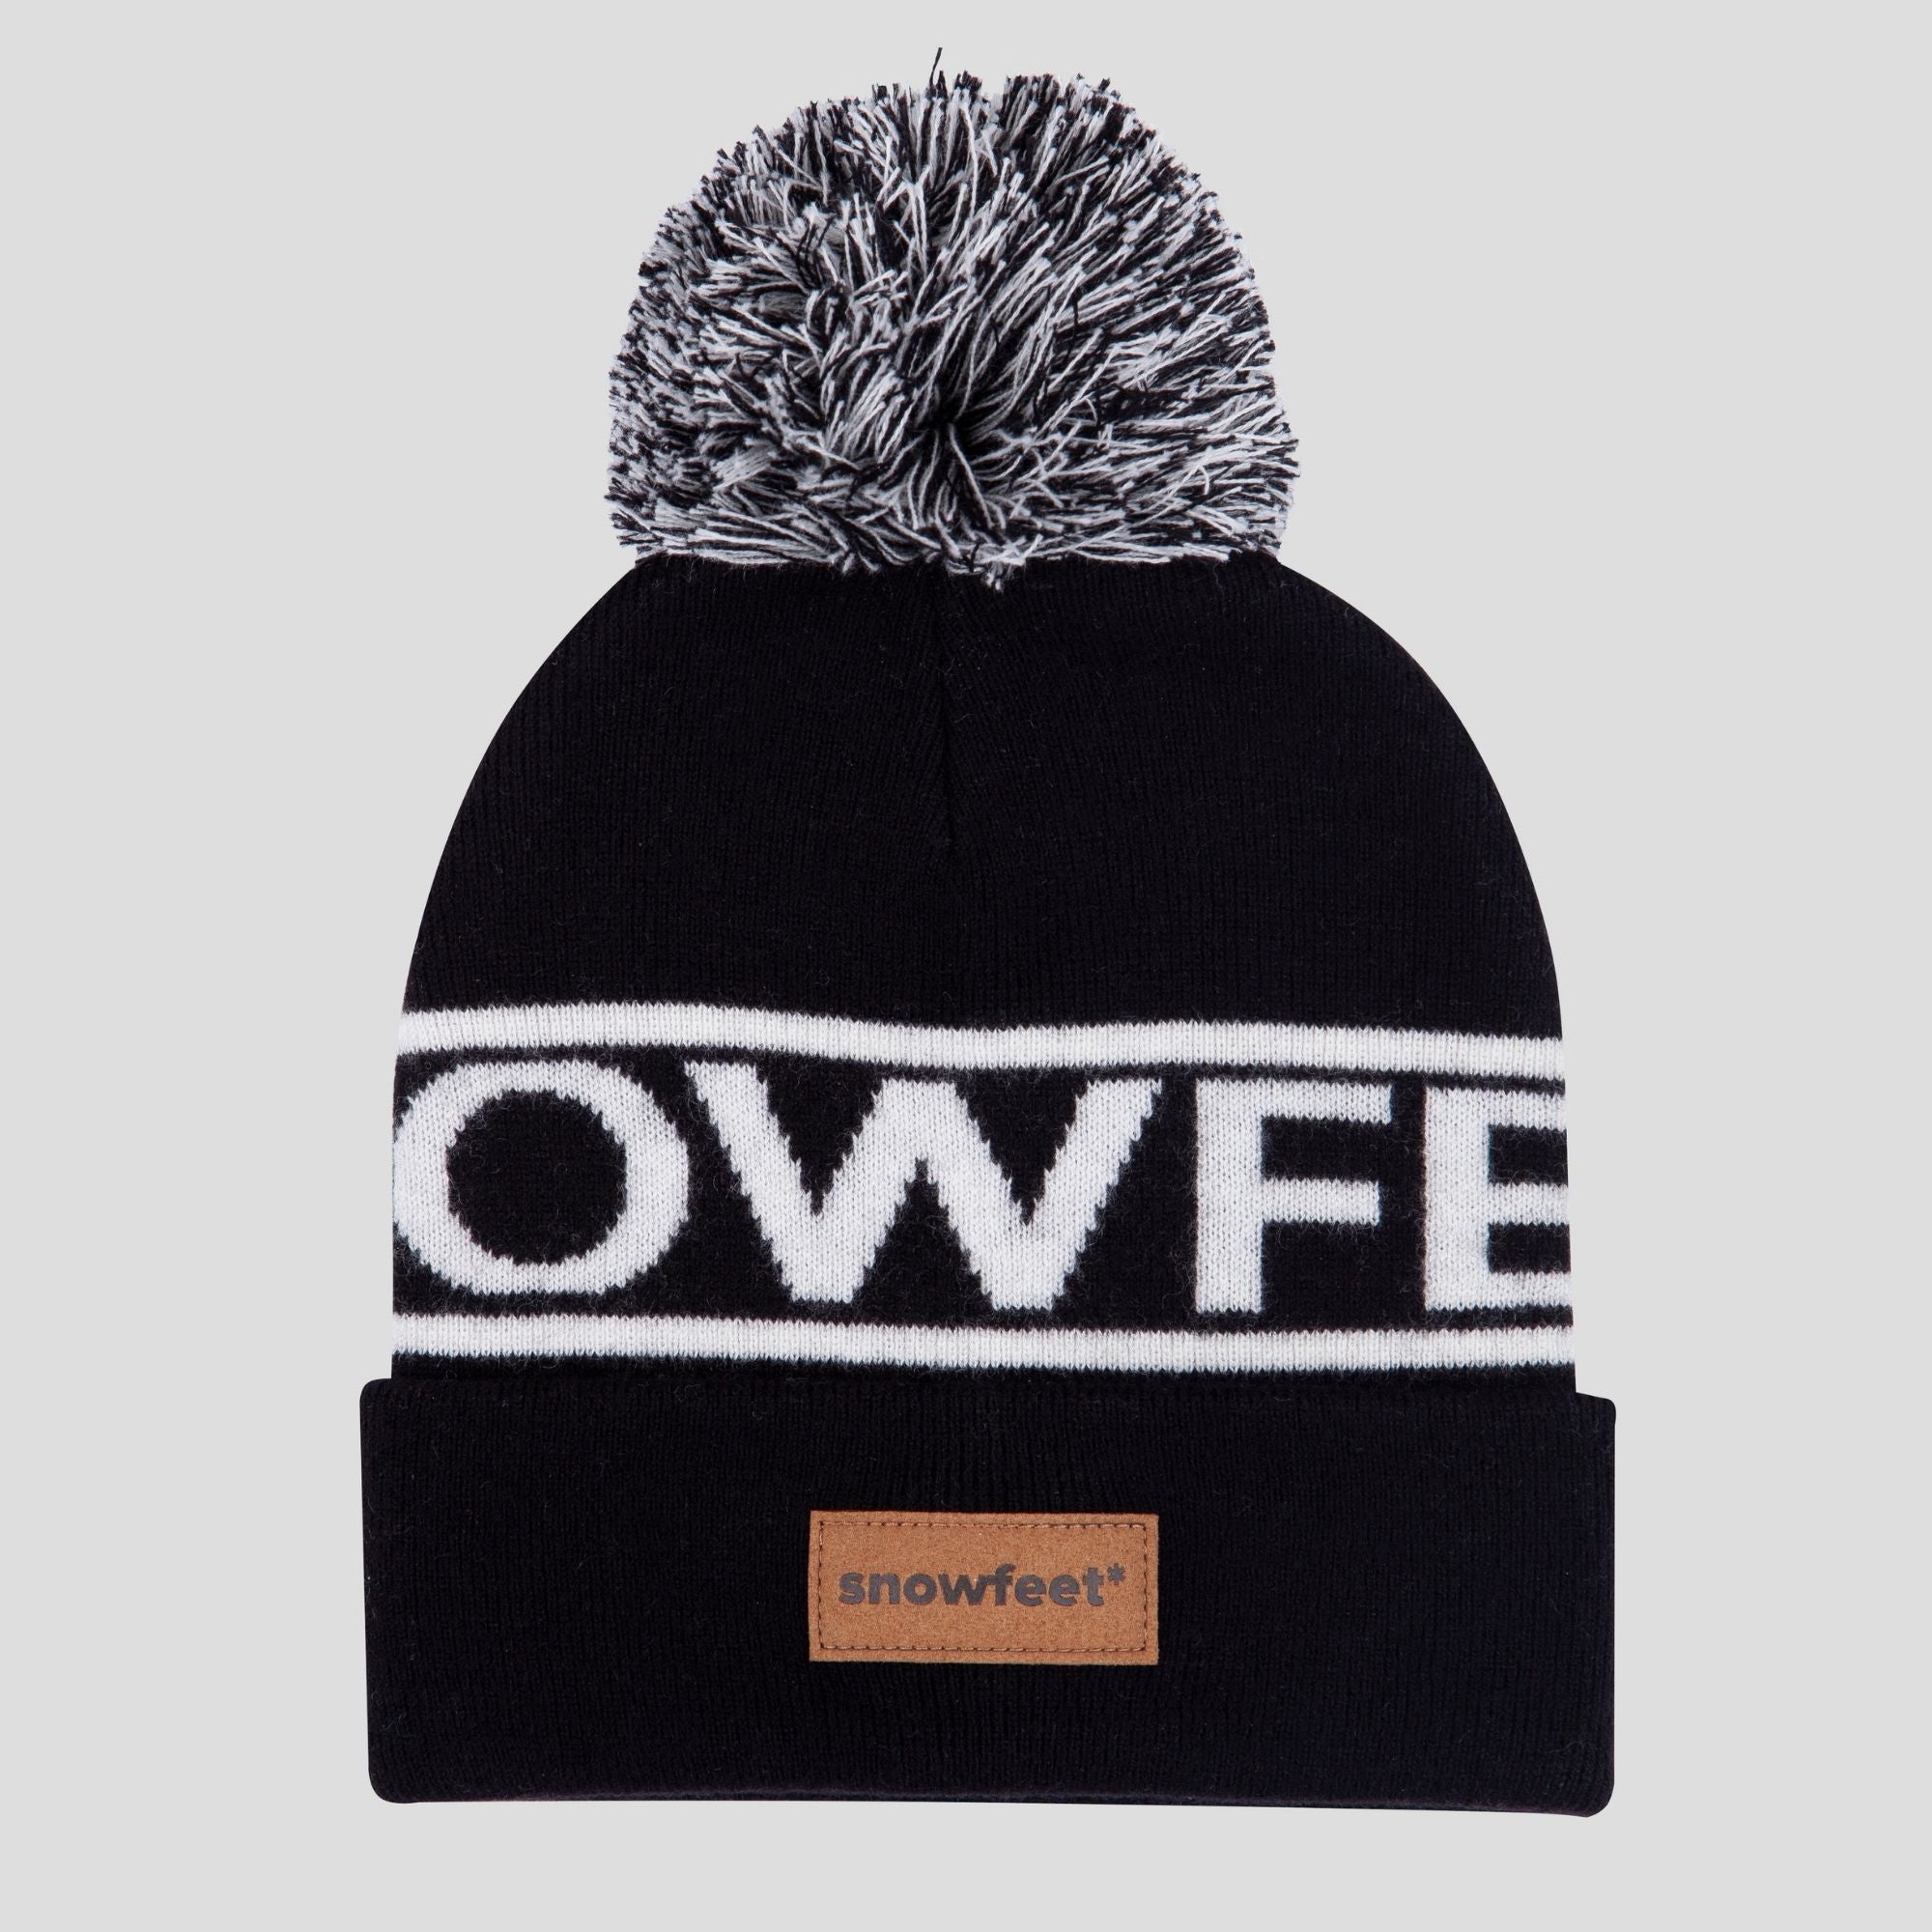 Snowfeet Logo Winter Knit Hat | Beanie Black